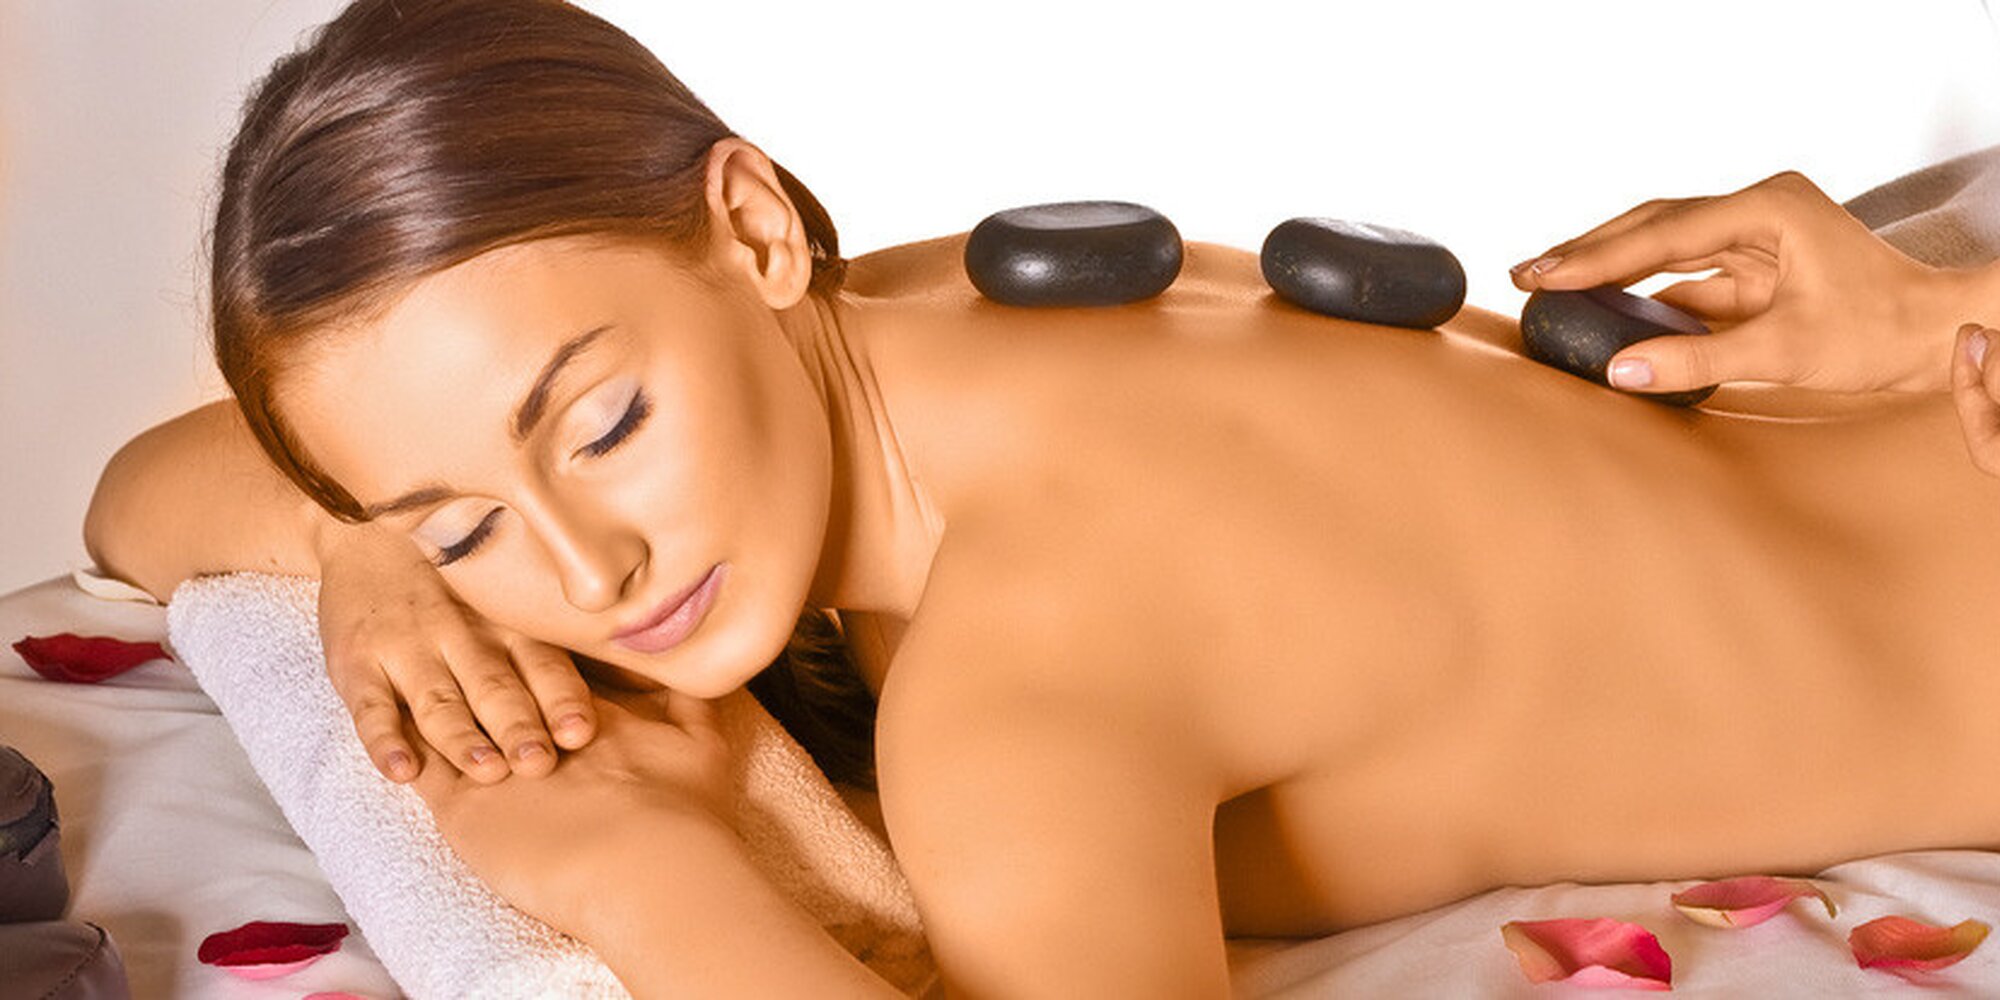 Massage how. Стоунтерапия. Стоунтерапия массаж. Массаж горячими камнями. Камень для массажа лица.